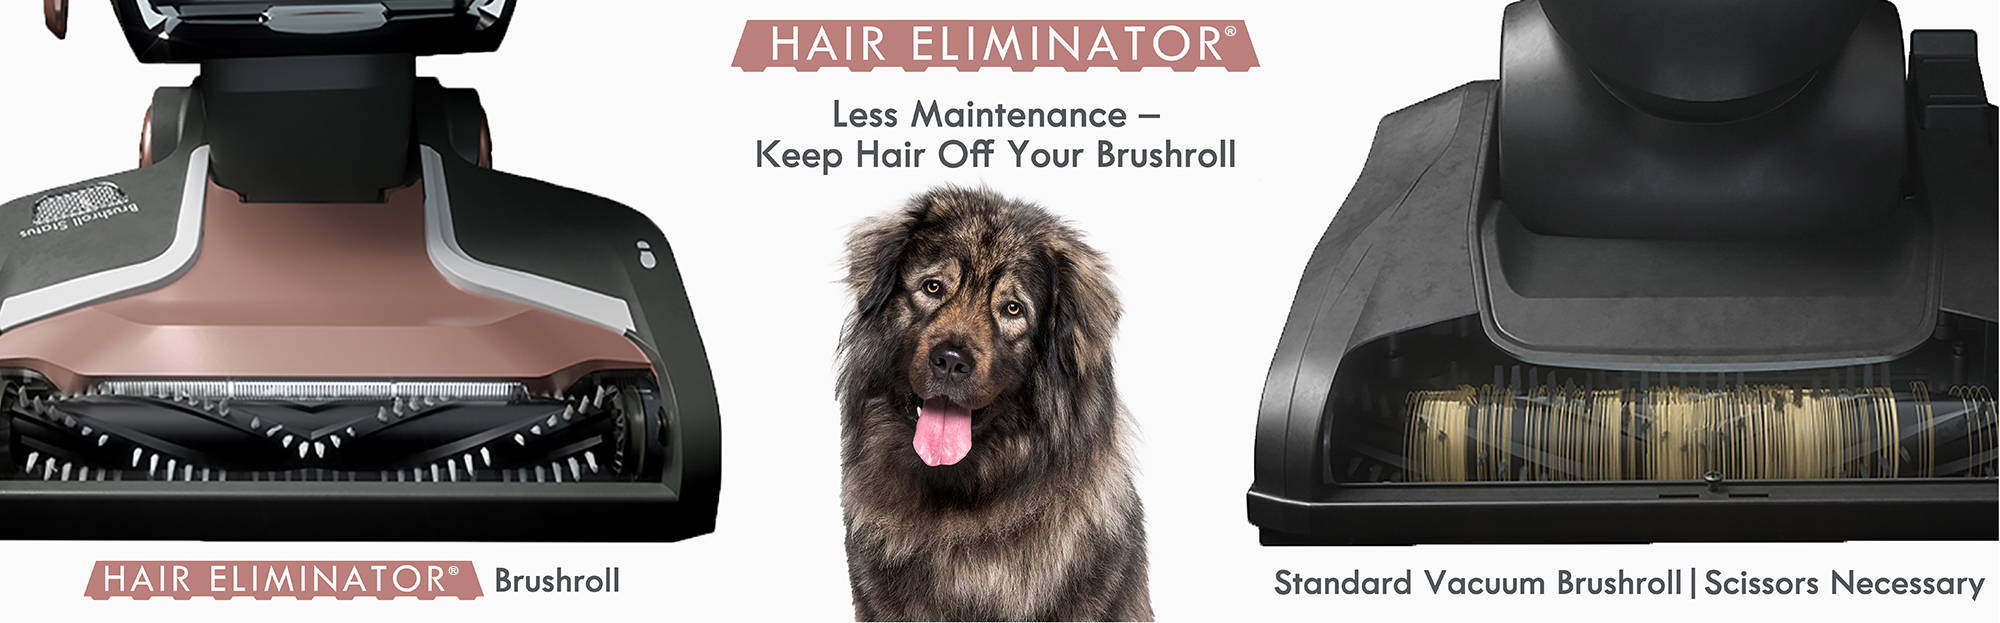 Hair Eliminator® brushroll